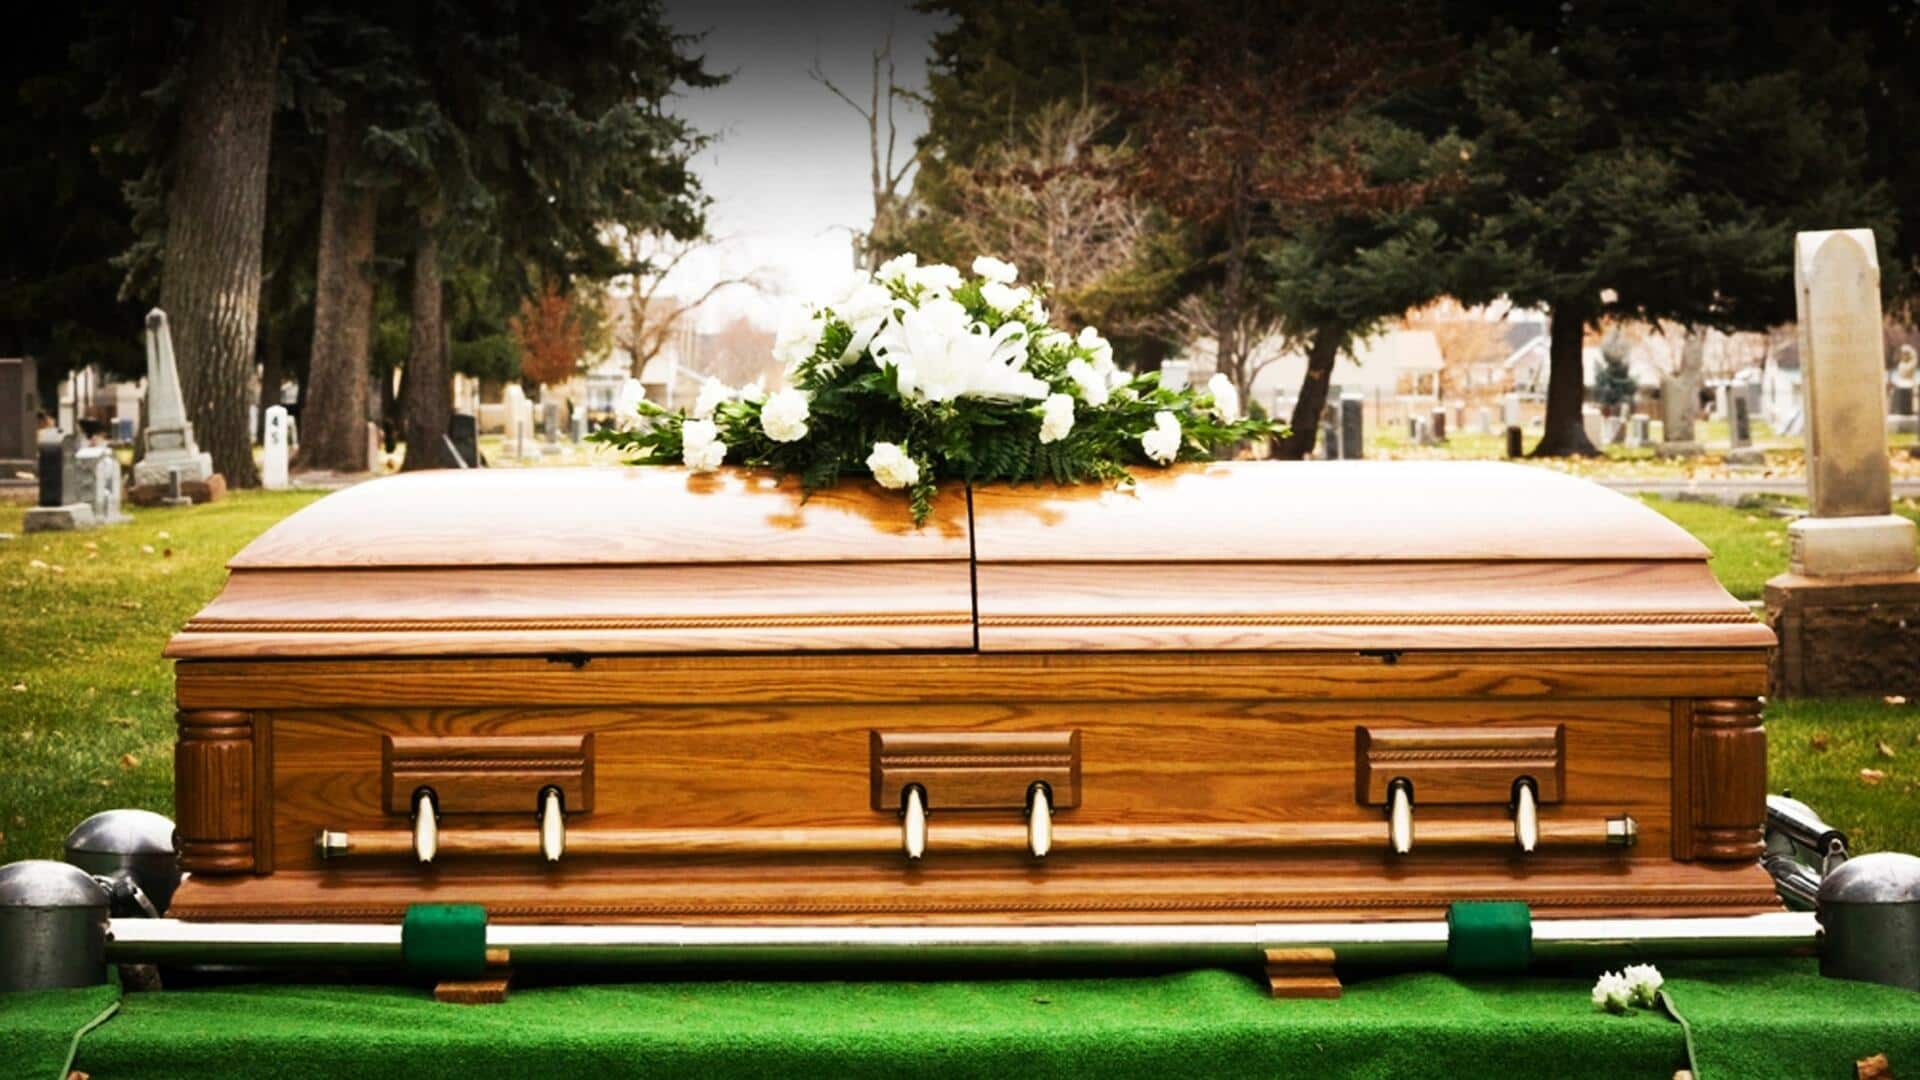 अमेरिका: प्रेमिका के साथ रहने के लिए पति ने किया अपनी मौत का नाटक, जानिए मामला